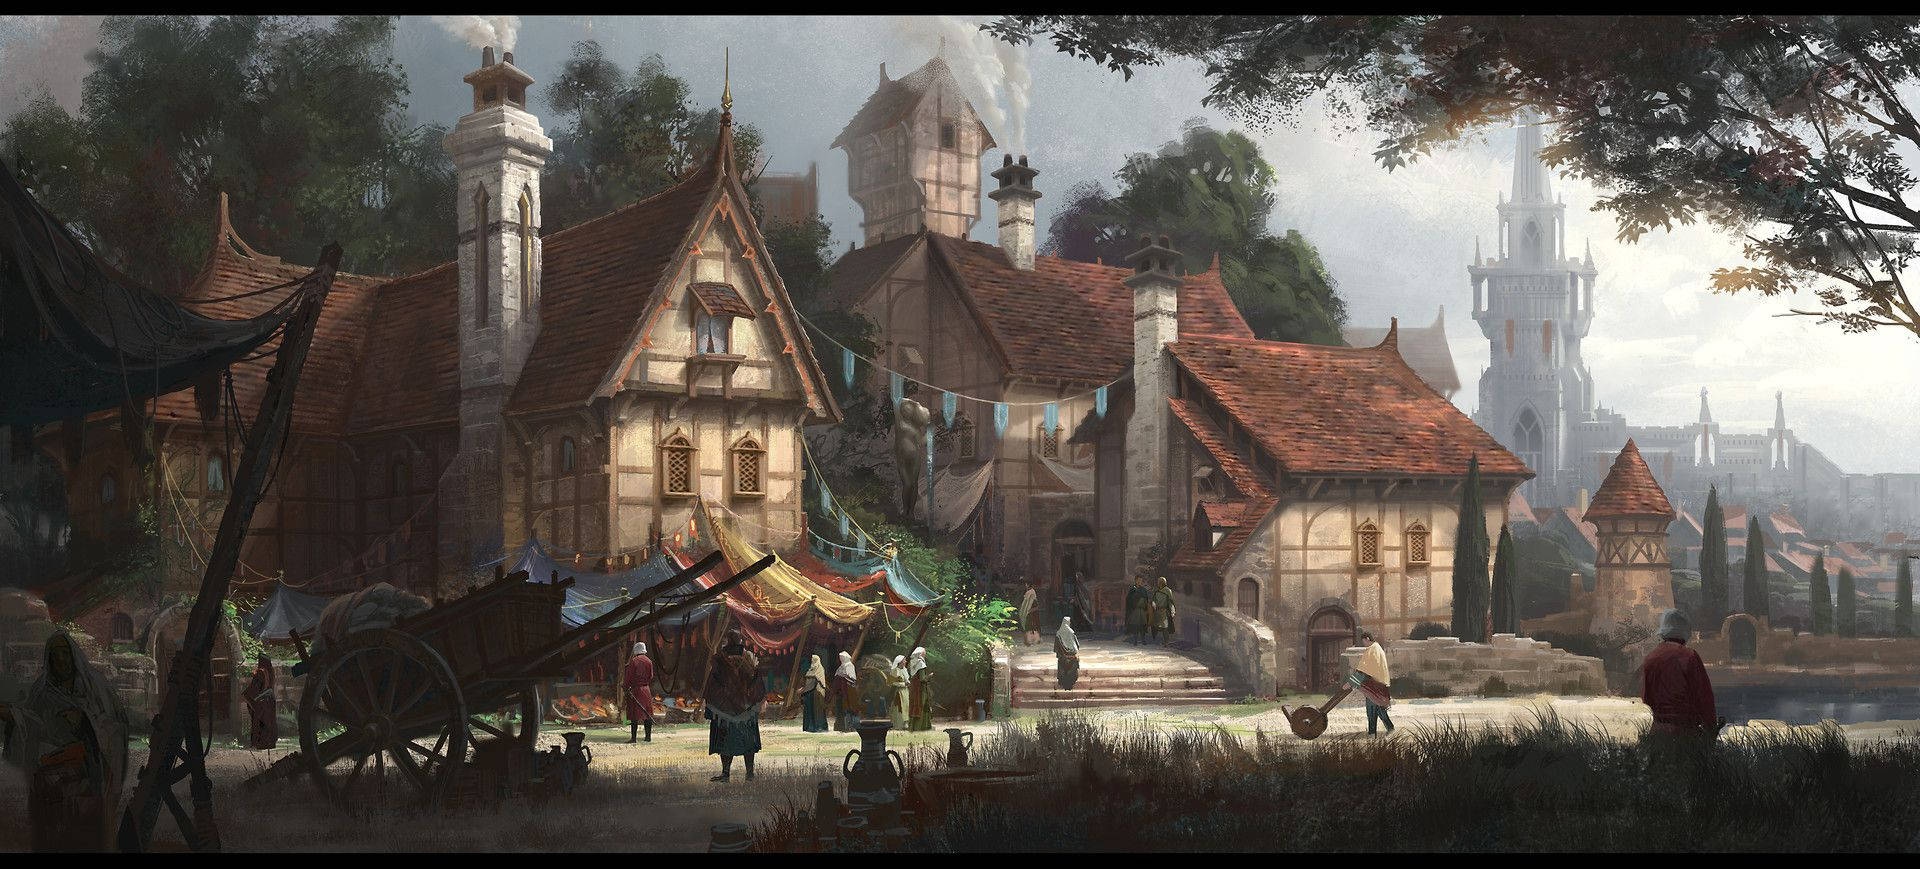 Medieval Fantasy Village Art Wallpaper